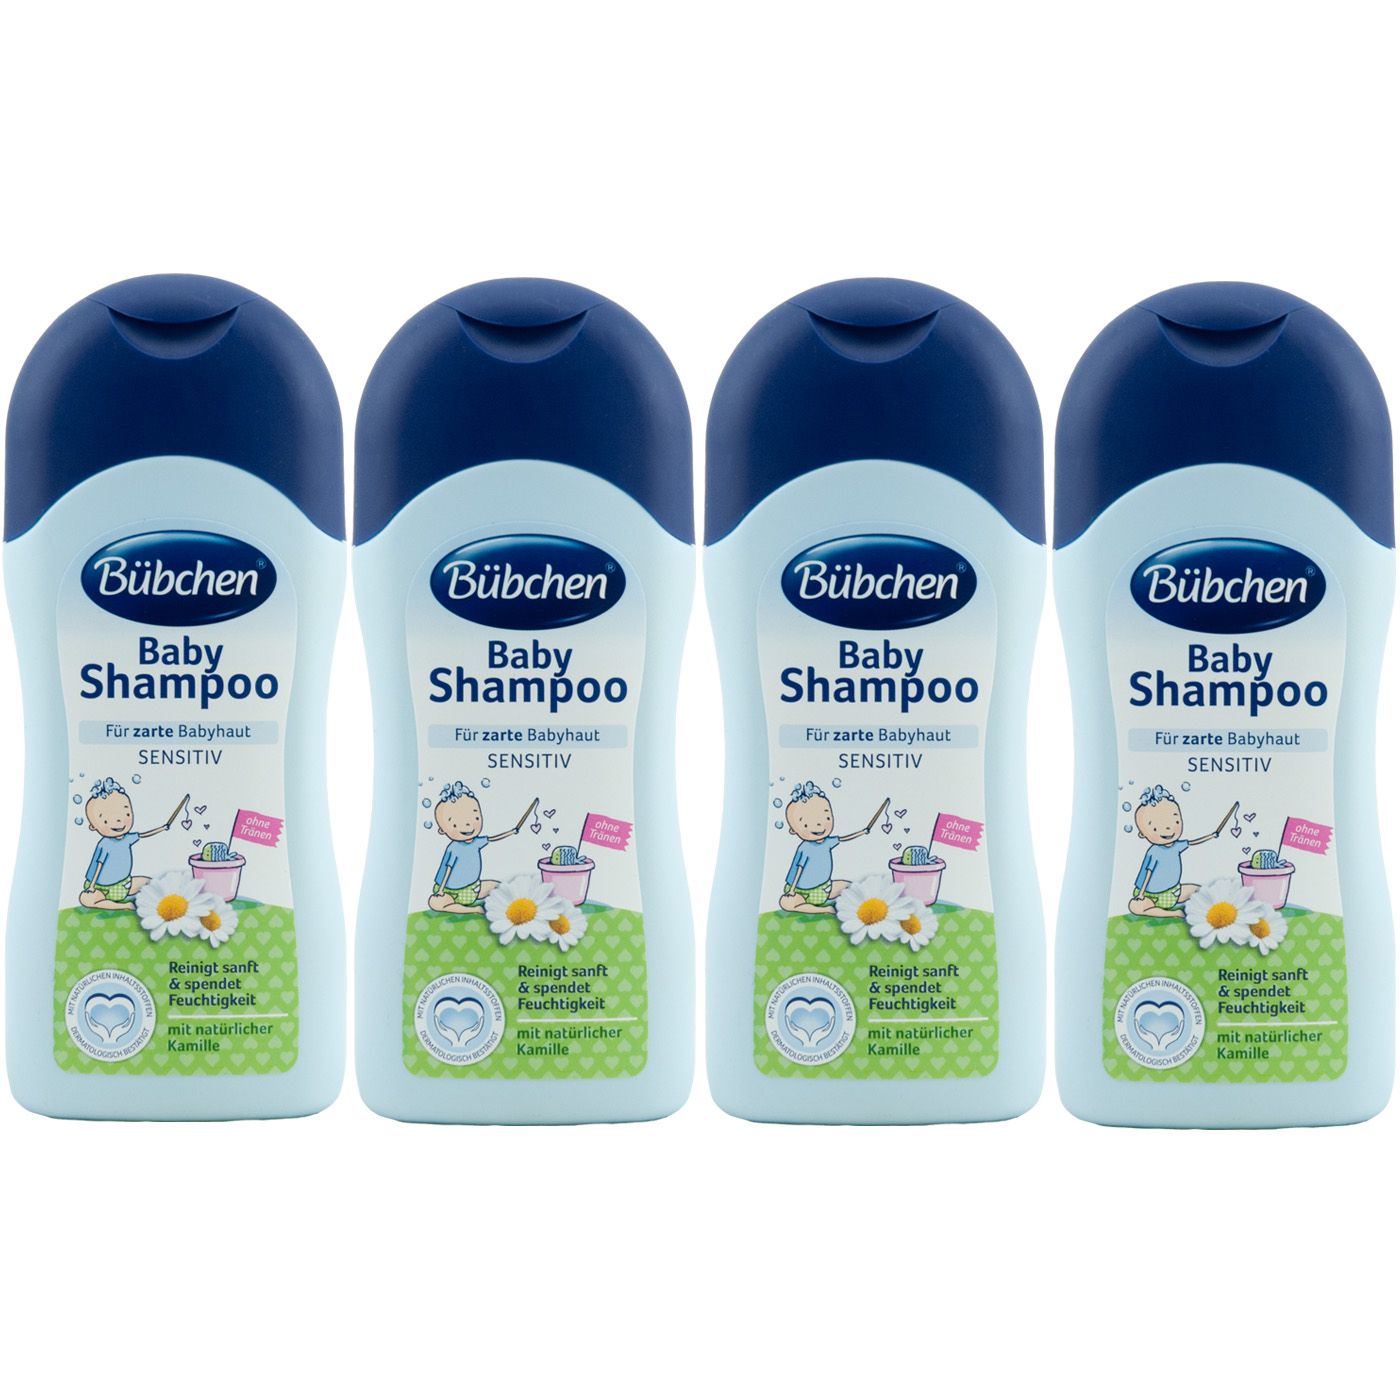 Bubchen Baby Shampoo Sensitiv 4 X 0 Ml Mit Naturlicher Kamille Ebay